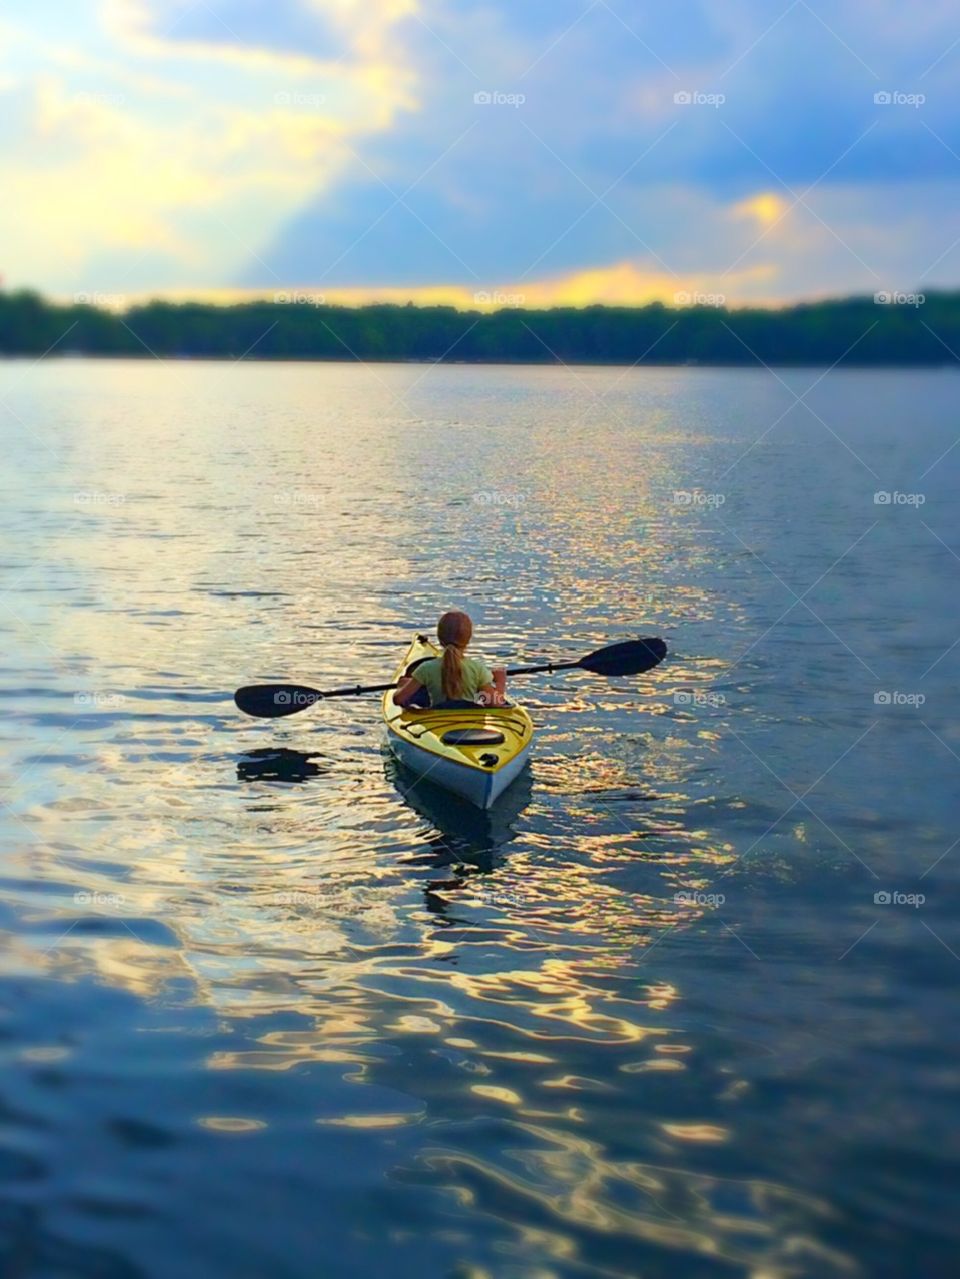 Kayaking 